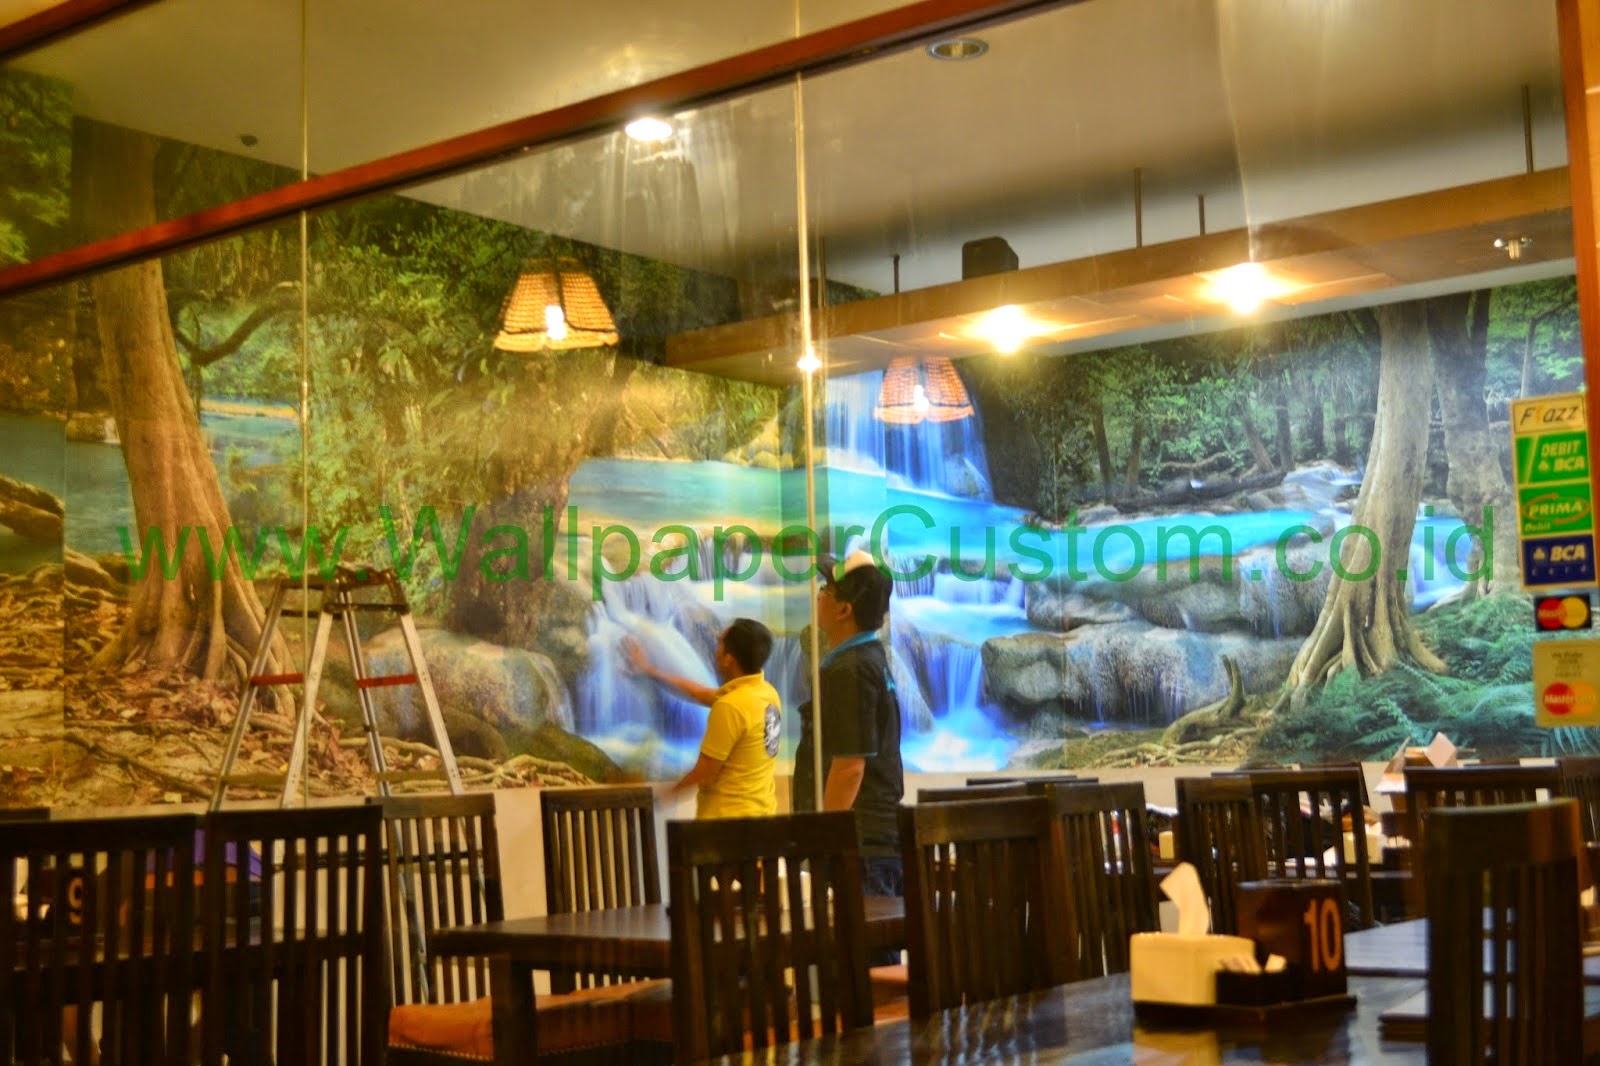 103 Jual Wallpaper Dinding 3d Di Bandung  Wallpaper Dinding